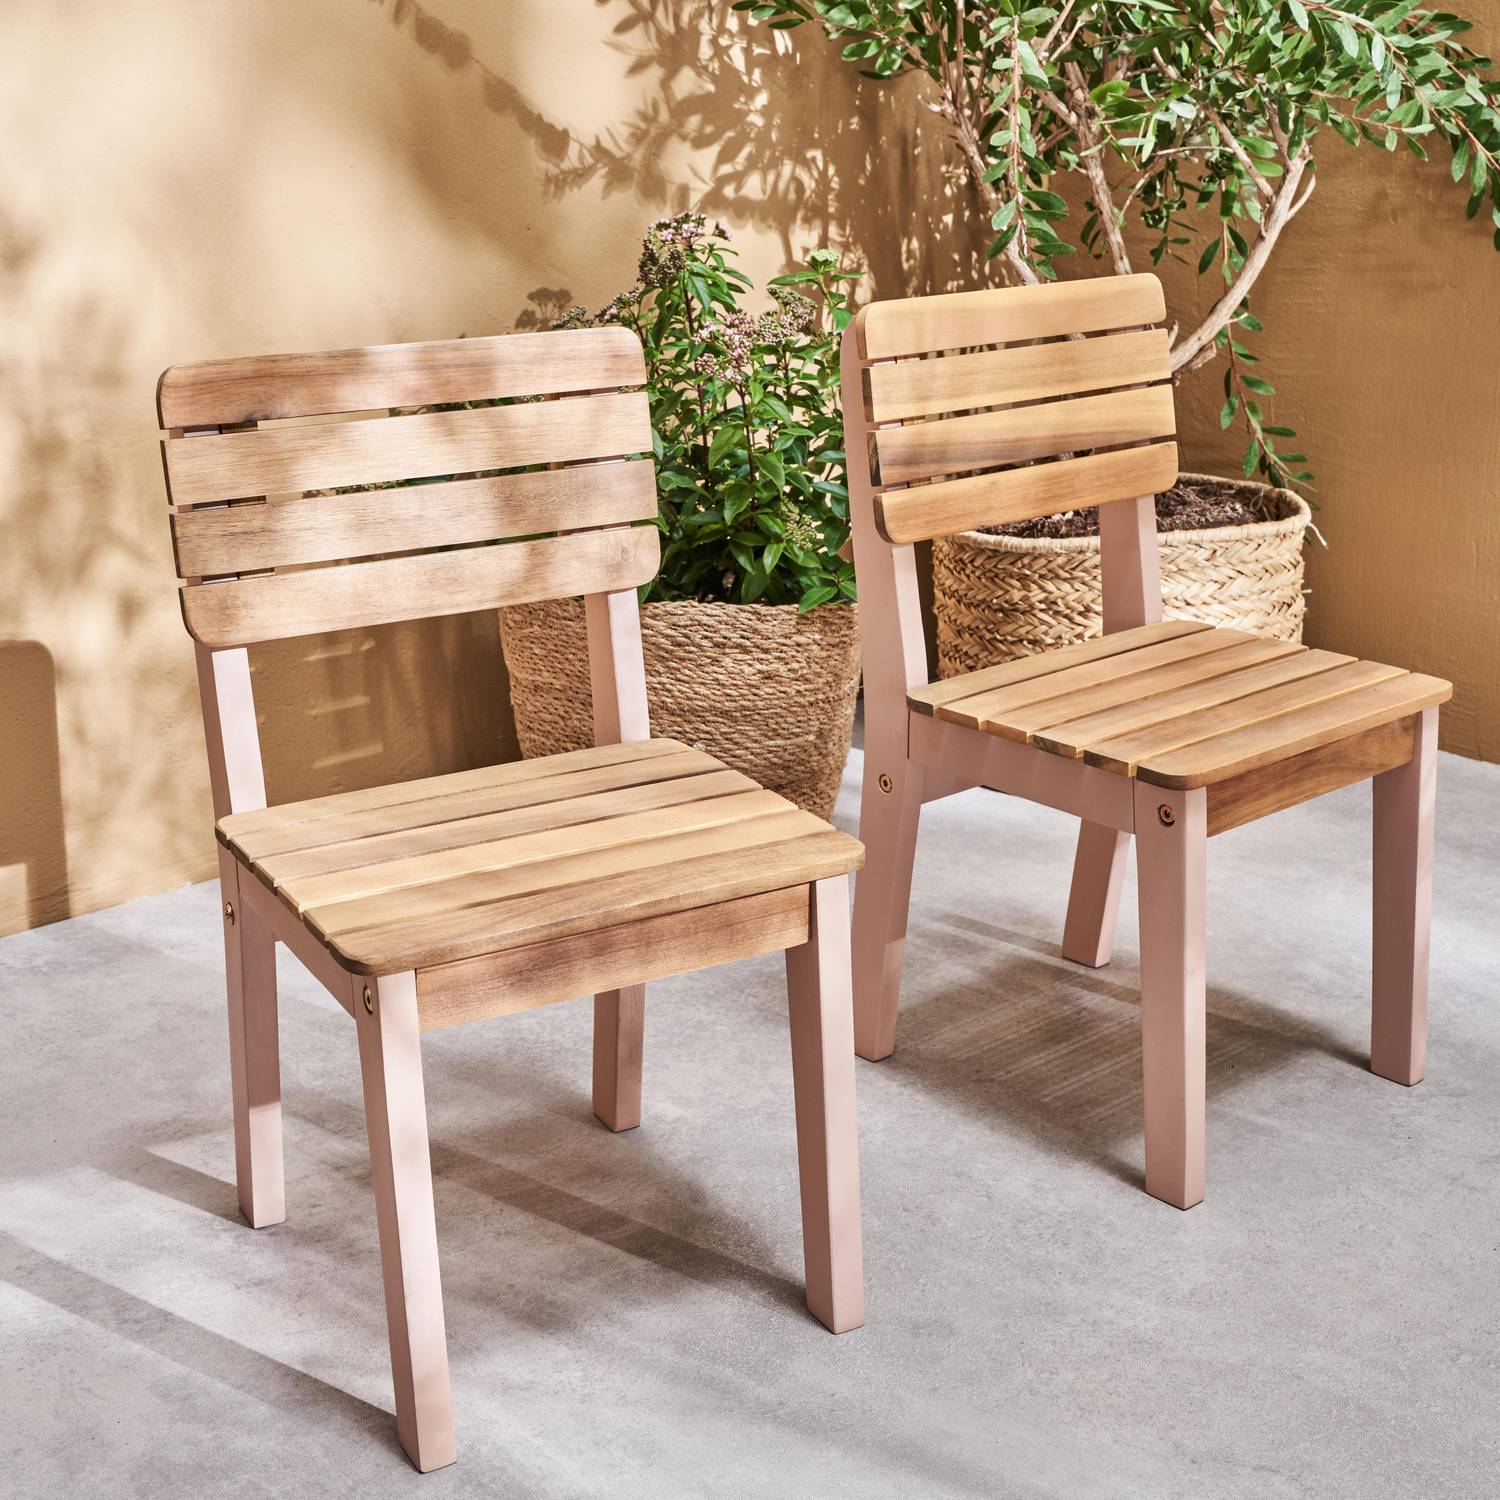  Lot de 2 chaises en bois d'acacia FSC pour enfant, salon de jardin enfant rose, intérieur / extérieur  Photo2